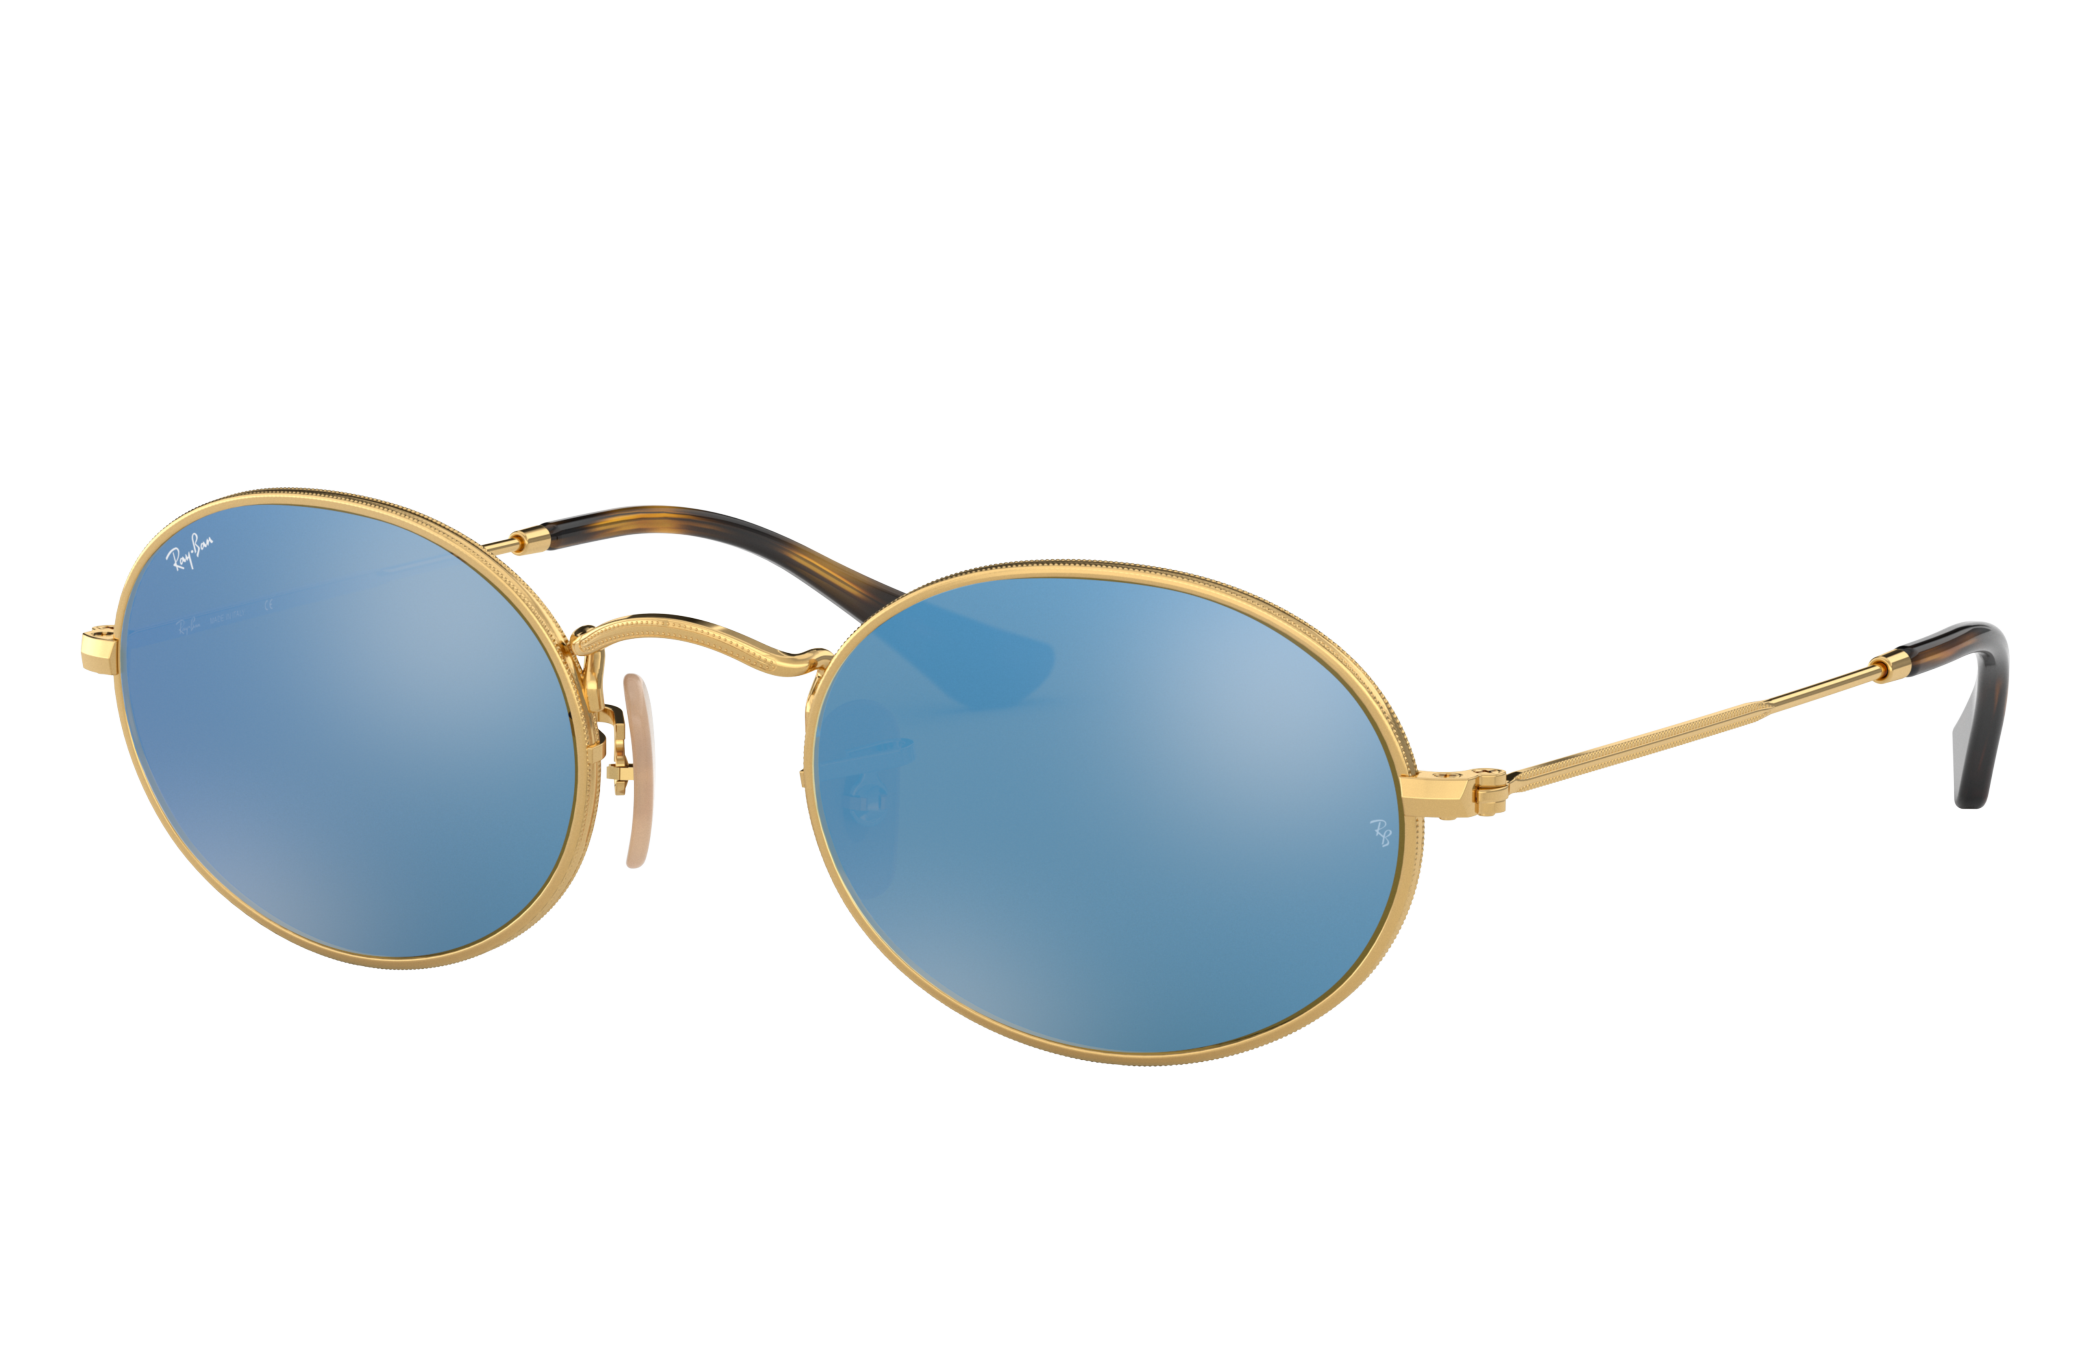 Fascinerend Aanbevolen doorgaan met Oval Flat Lenses Sunglasses in Gold and Light Blue | Ray-Ban®